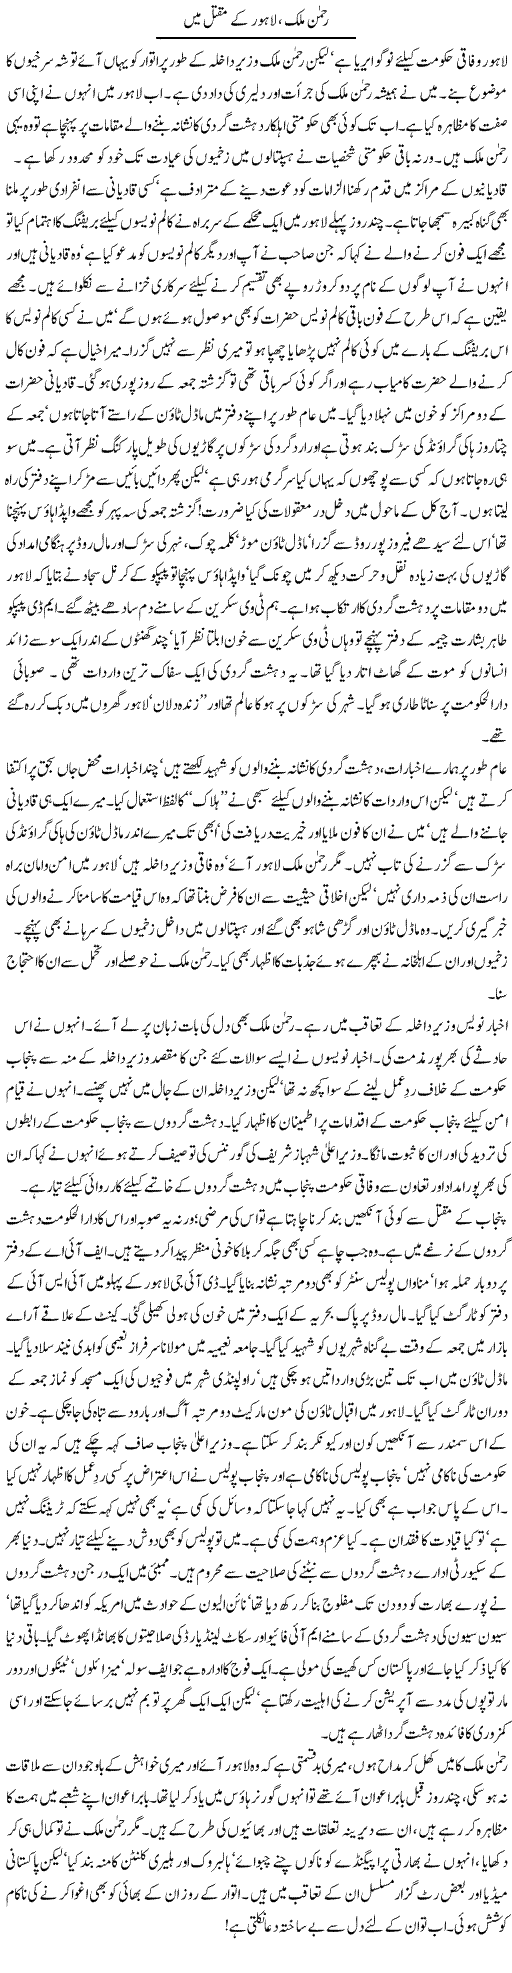 Rehman Malik aur Lahore Express Column Asadullah Galib 1 June 2010